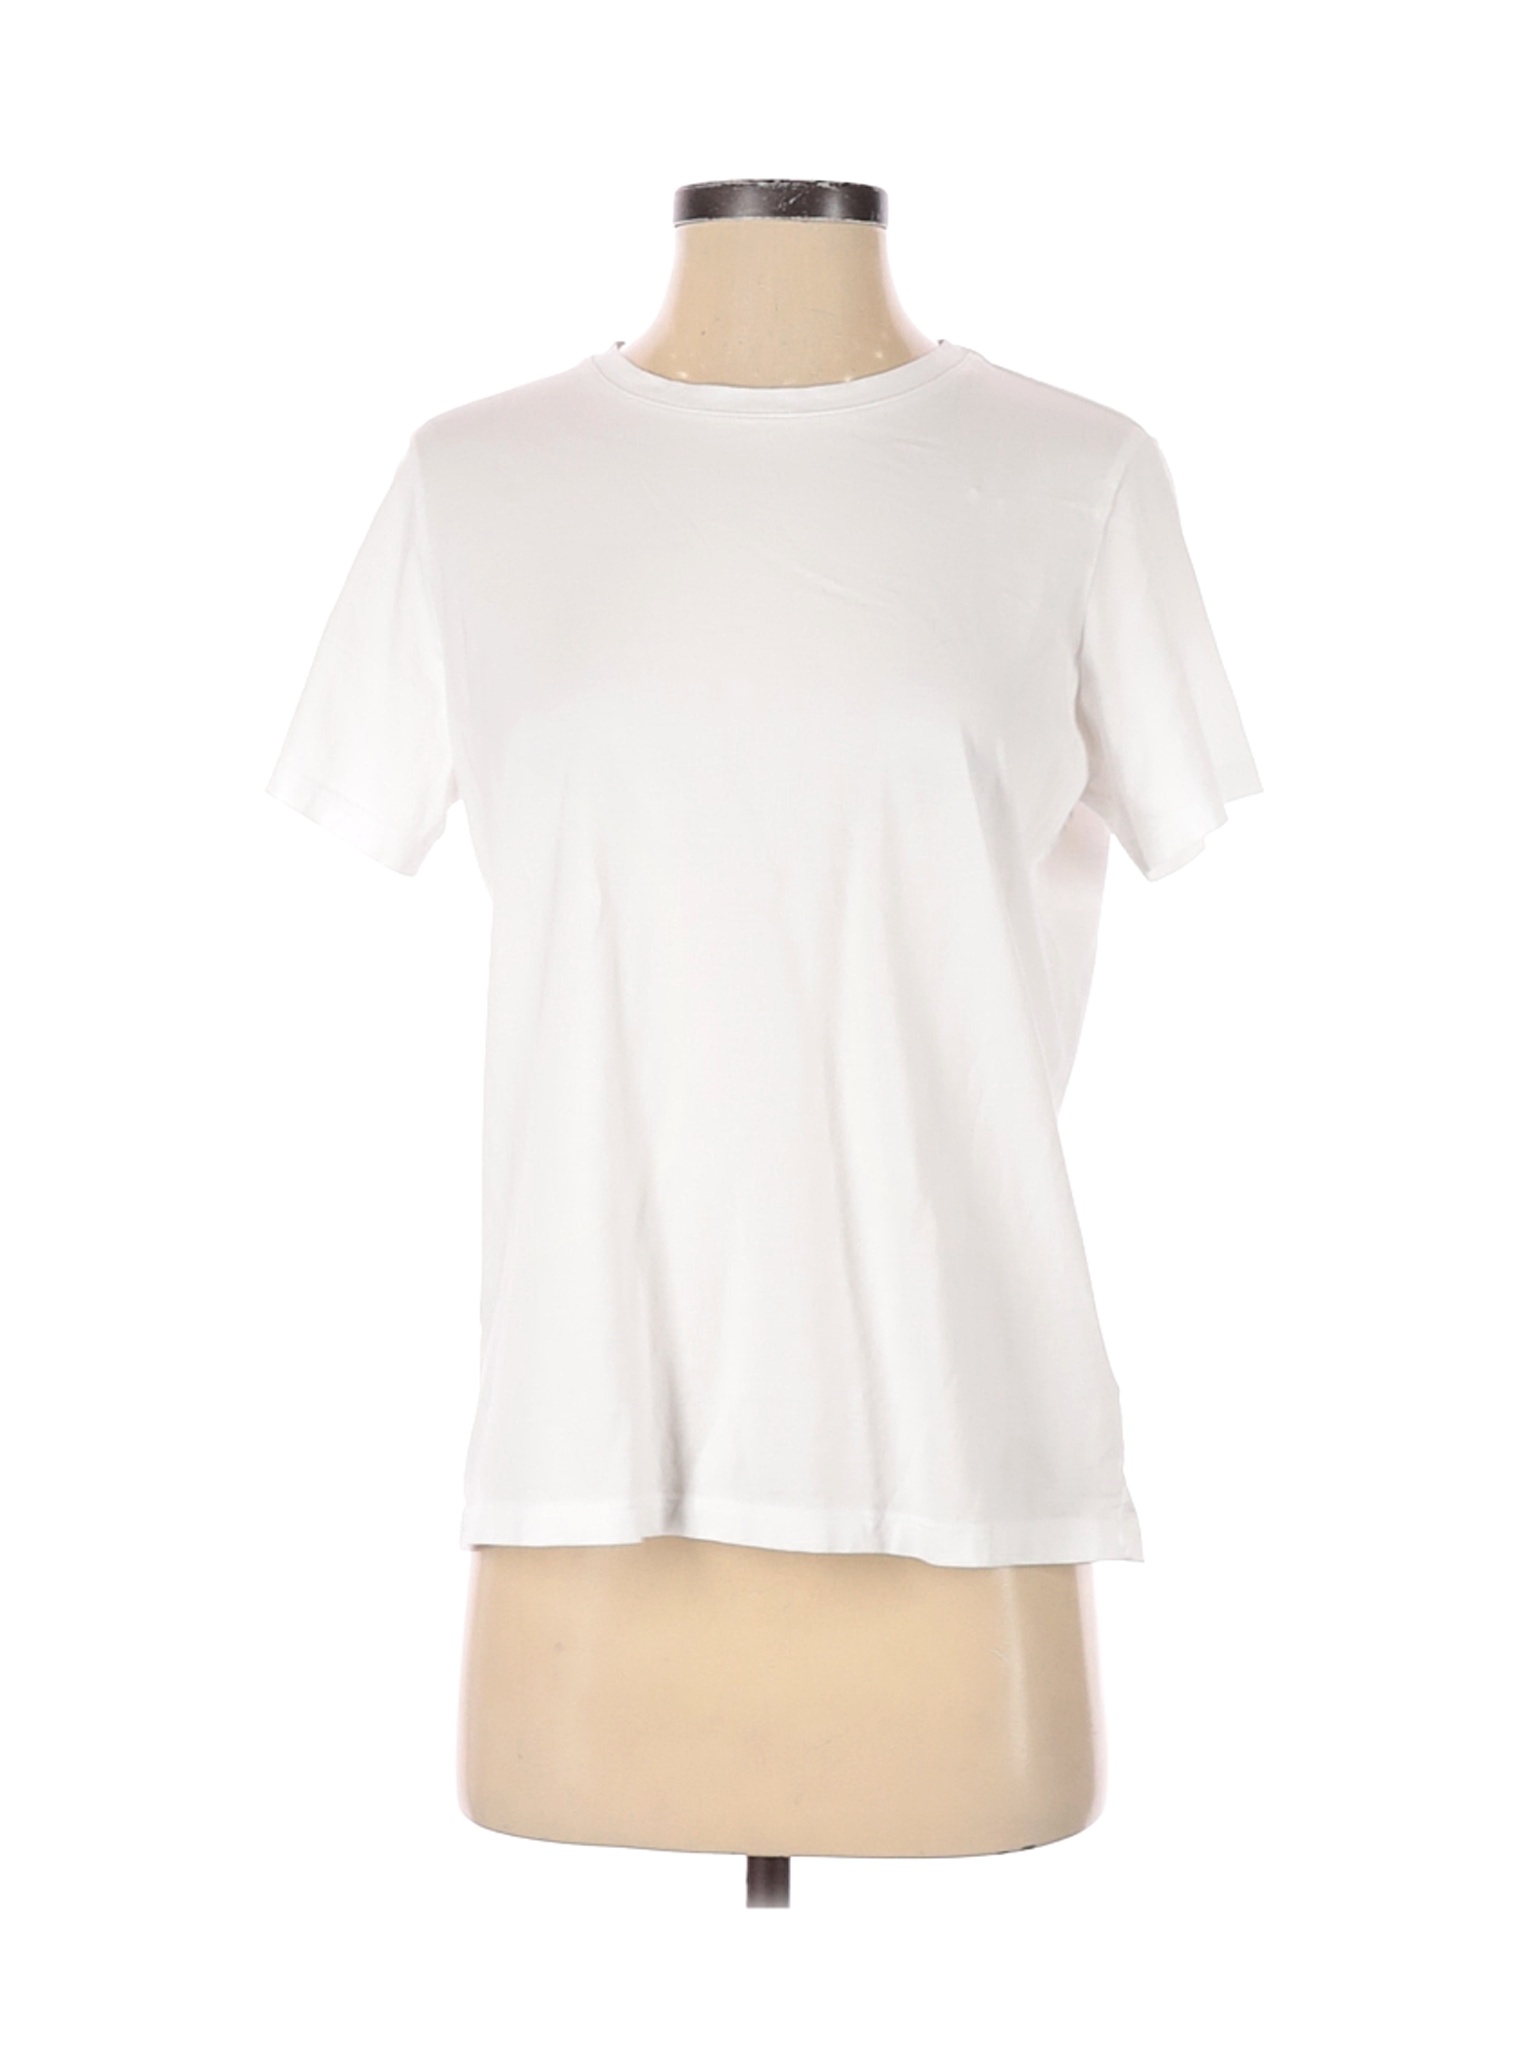 Lands' End Women White Short Sleeve T-Shirt S | eBay